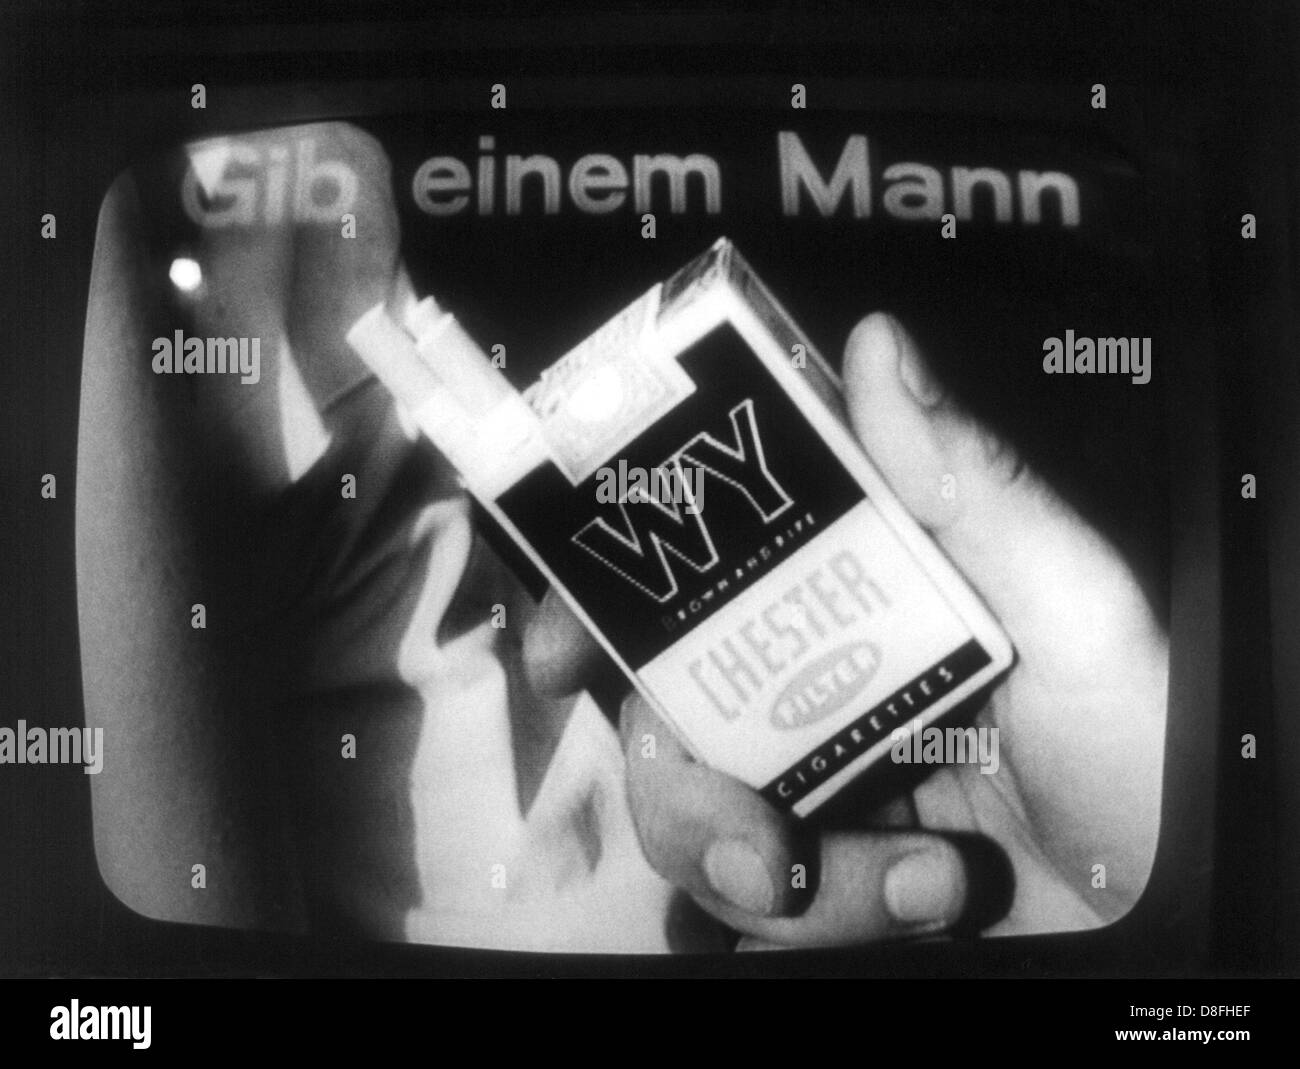 "Donnez un homme WY' indique au spectateur de télévision d'acheter des cigarettes de l'étiquette WY, d''une télévision publicité de 1965. Banque D'Images